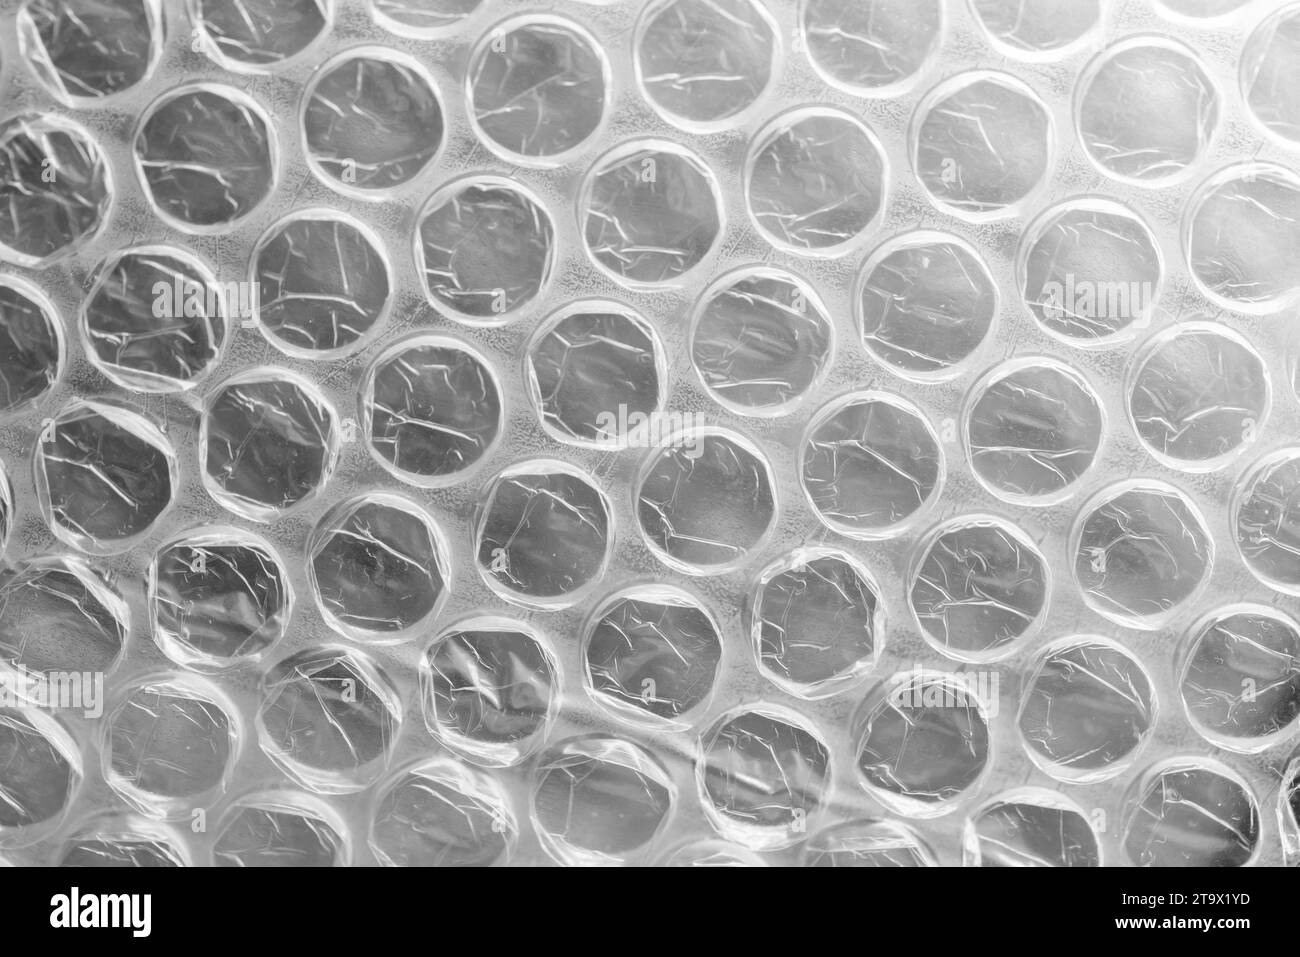 Luftpolsterfolie, Nahaufnahme Hintergrundfoto. Es handelt sich um ein biegsames, transparentes Kunststoffmaterial mit Luftblasen, das zum Verpacken zerbrechlicher Gegenstände verwendet wird Stockfoto